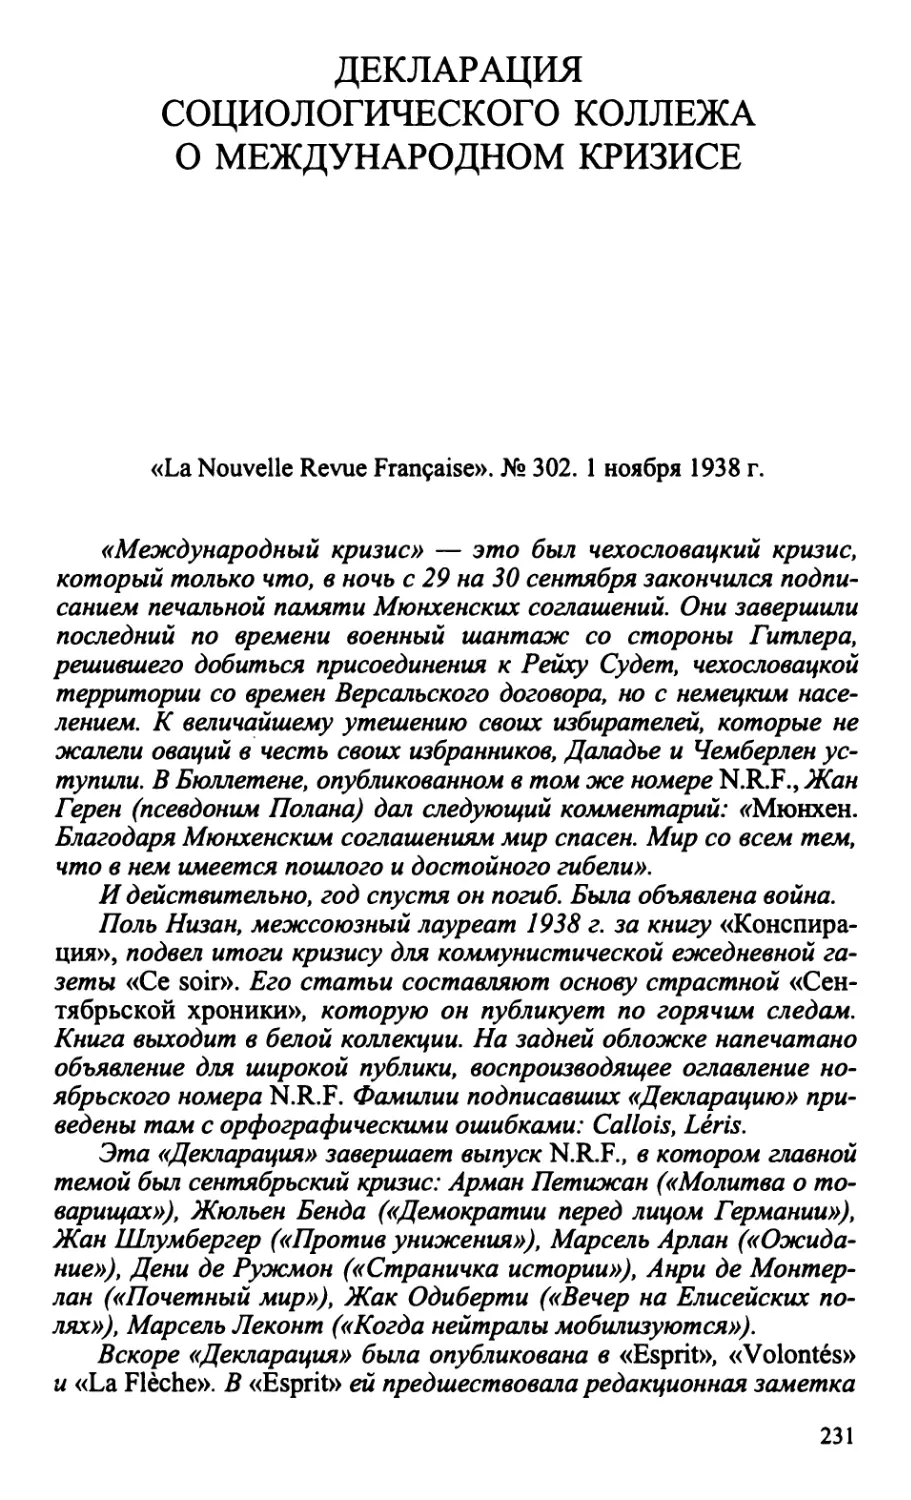 Декларация Коллежа Социологии о международном кризисе. «La Nouvelle Revue Française». № 302. 1 ноября 1938 г